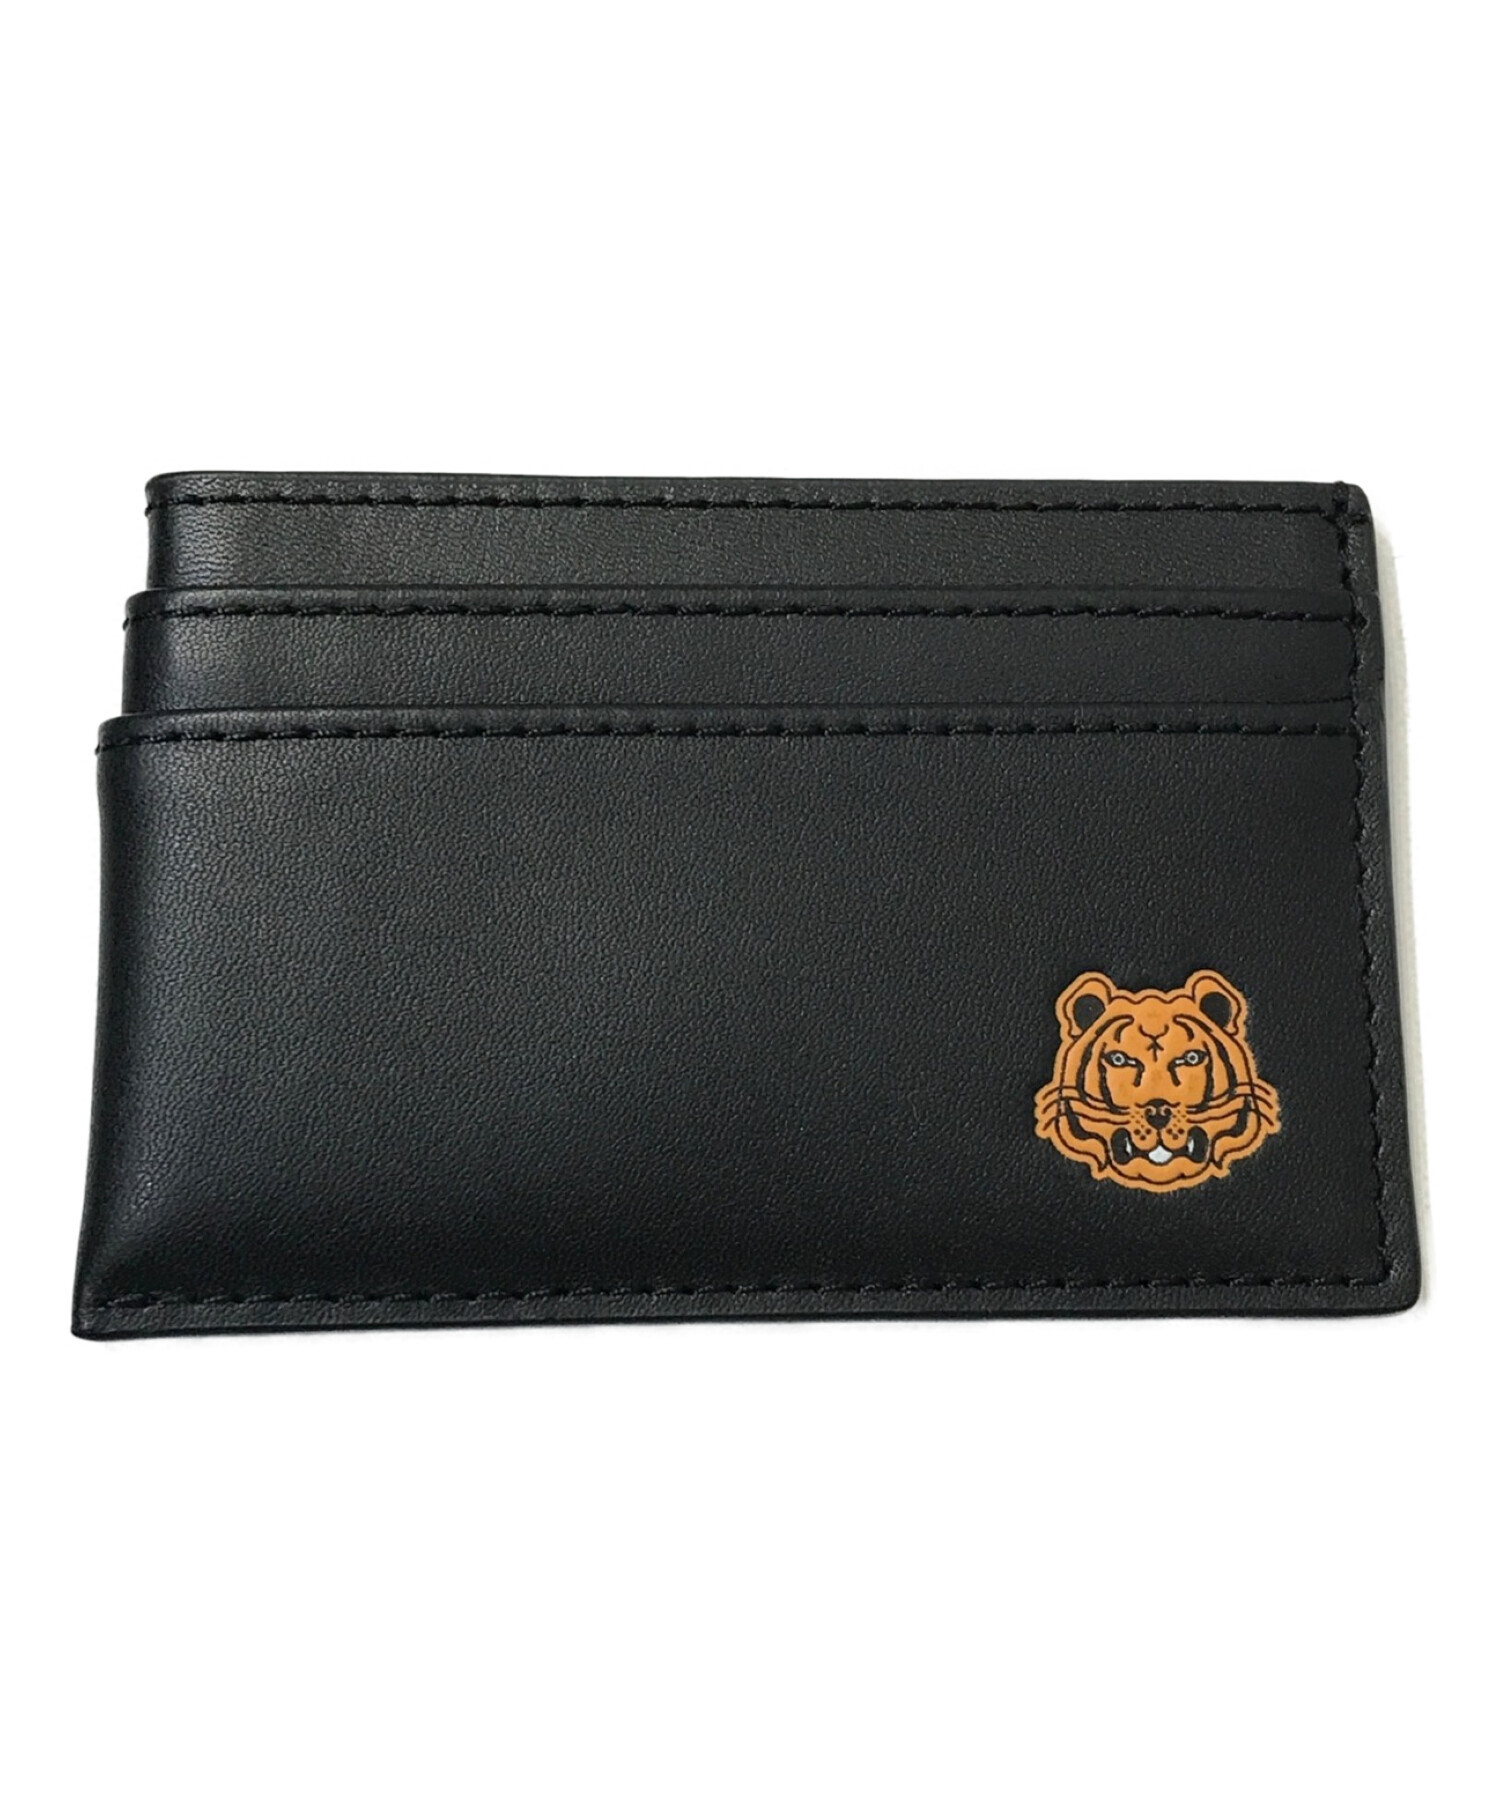 KENZO ケンゾー ブラック カードケース フラグメントケース タイガー刺繍